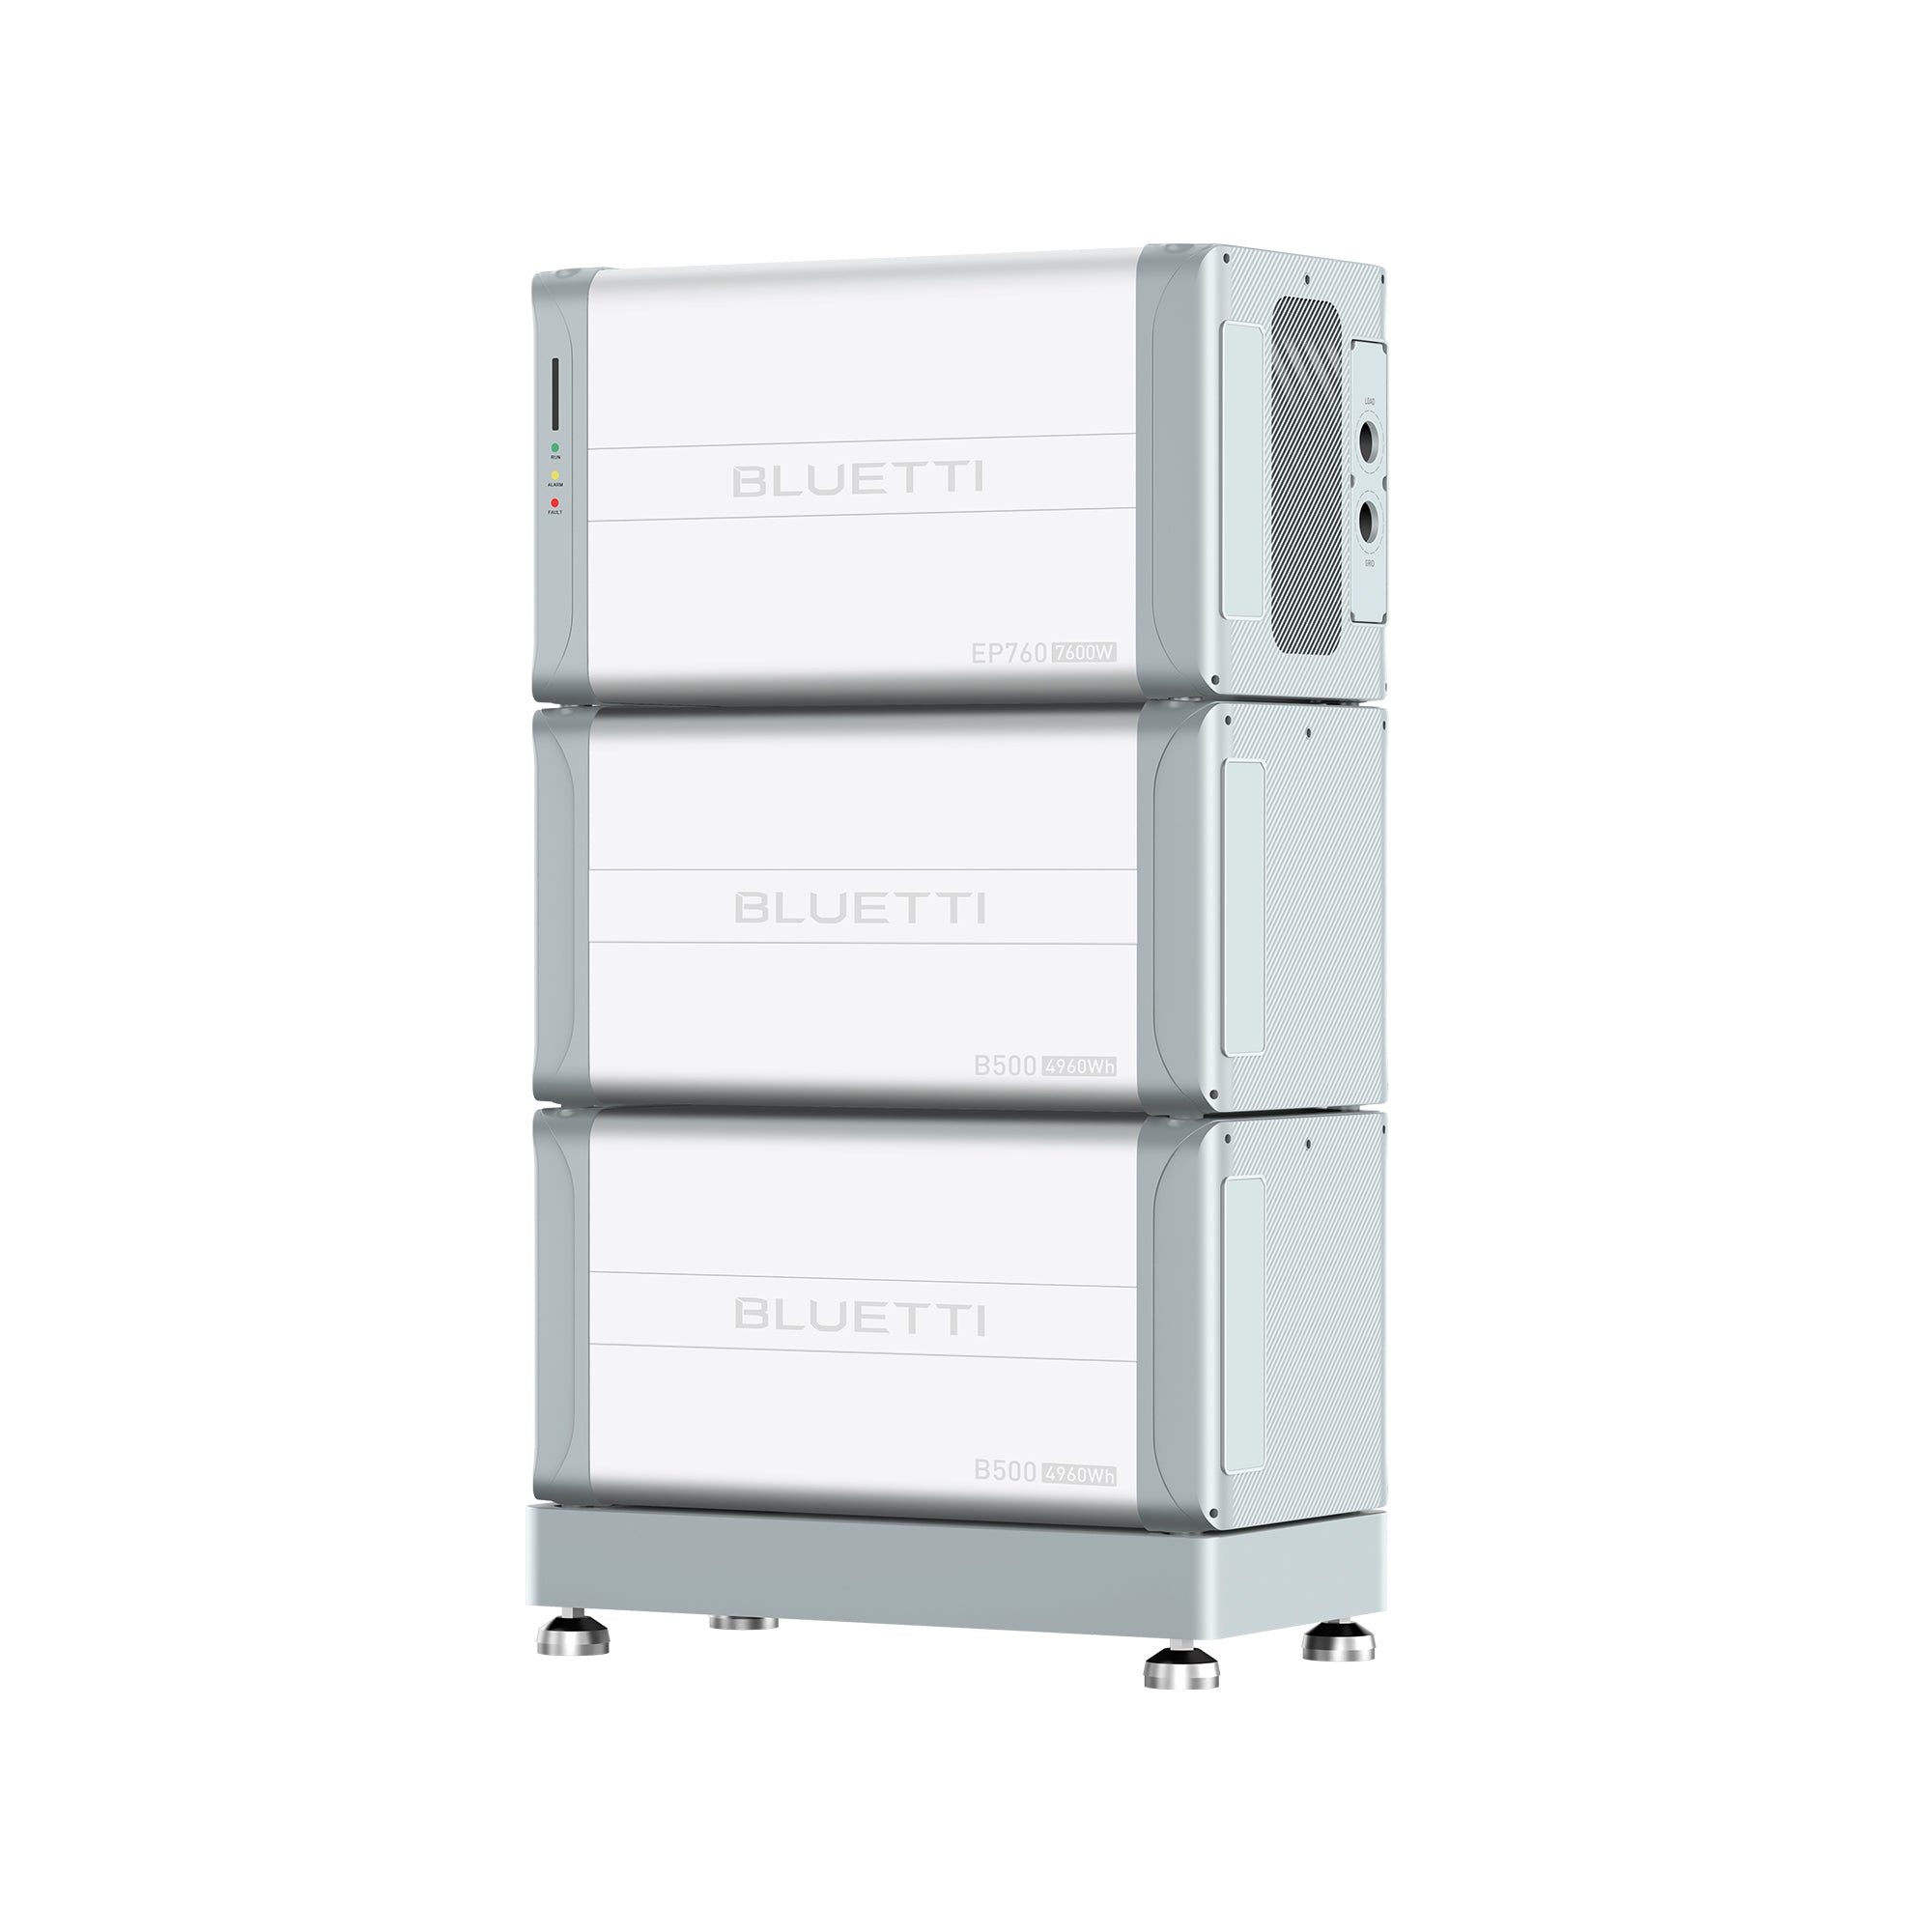 Image of BLUETTI EP760 + B500 Backup della batteria domestica | Fino a 7.600 W di potenza e 19.840 Wh di capacità - BLUETTI IT, B500 | 4960Wh Batteria di espansione